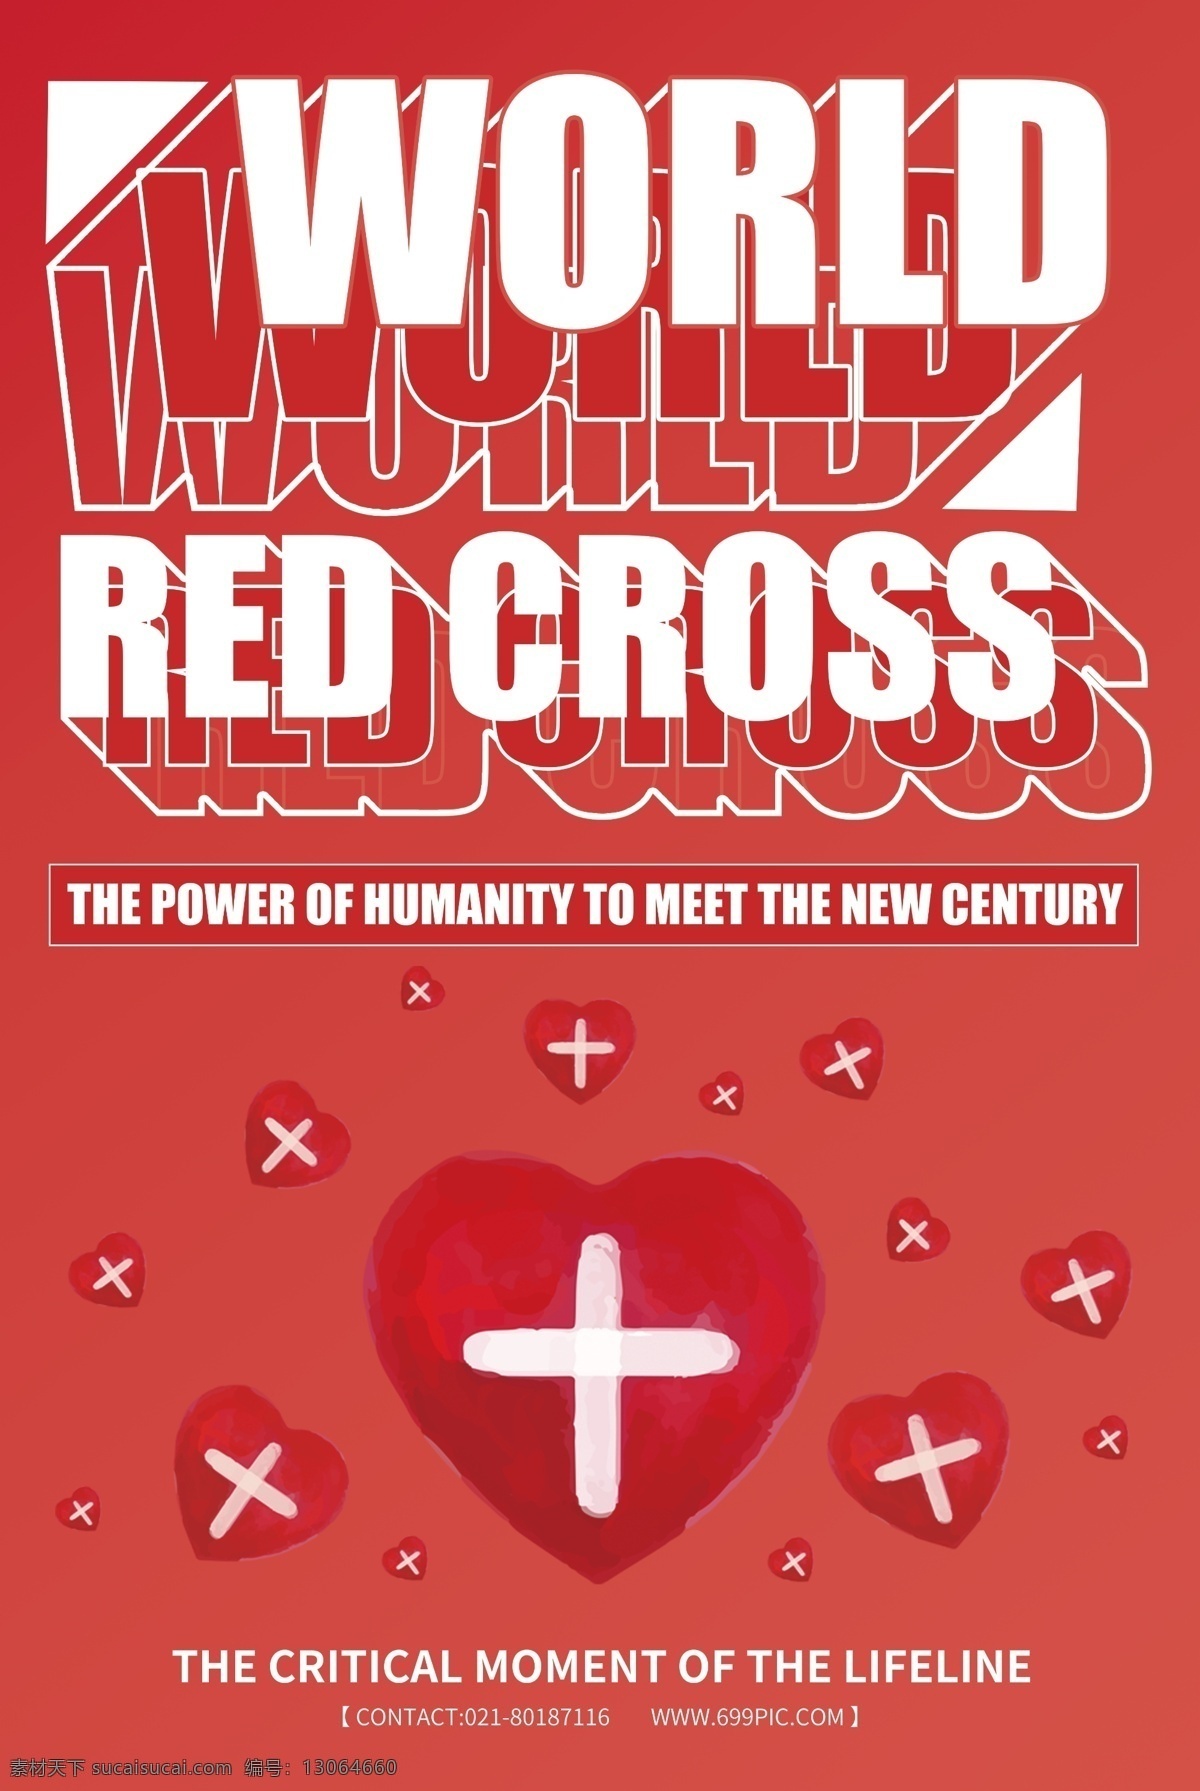 纯 英文 世界 红十字日 宣传海报 世界红十字日 红十字 英文版 英语 奉献爱心 爱心 呼吸帮助 十字 英文海报 节日